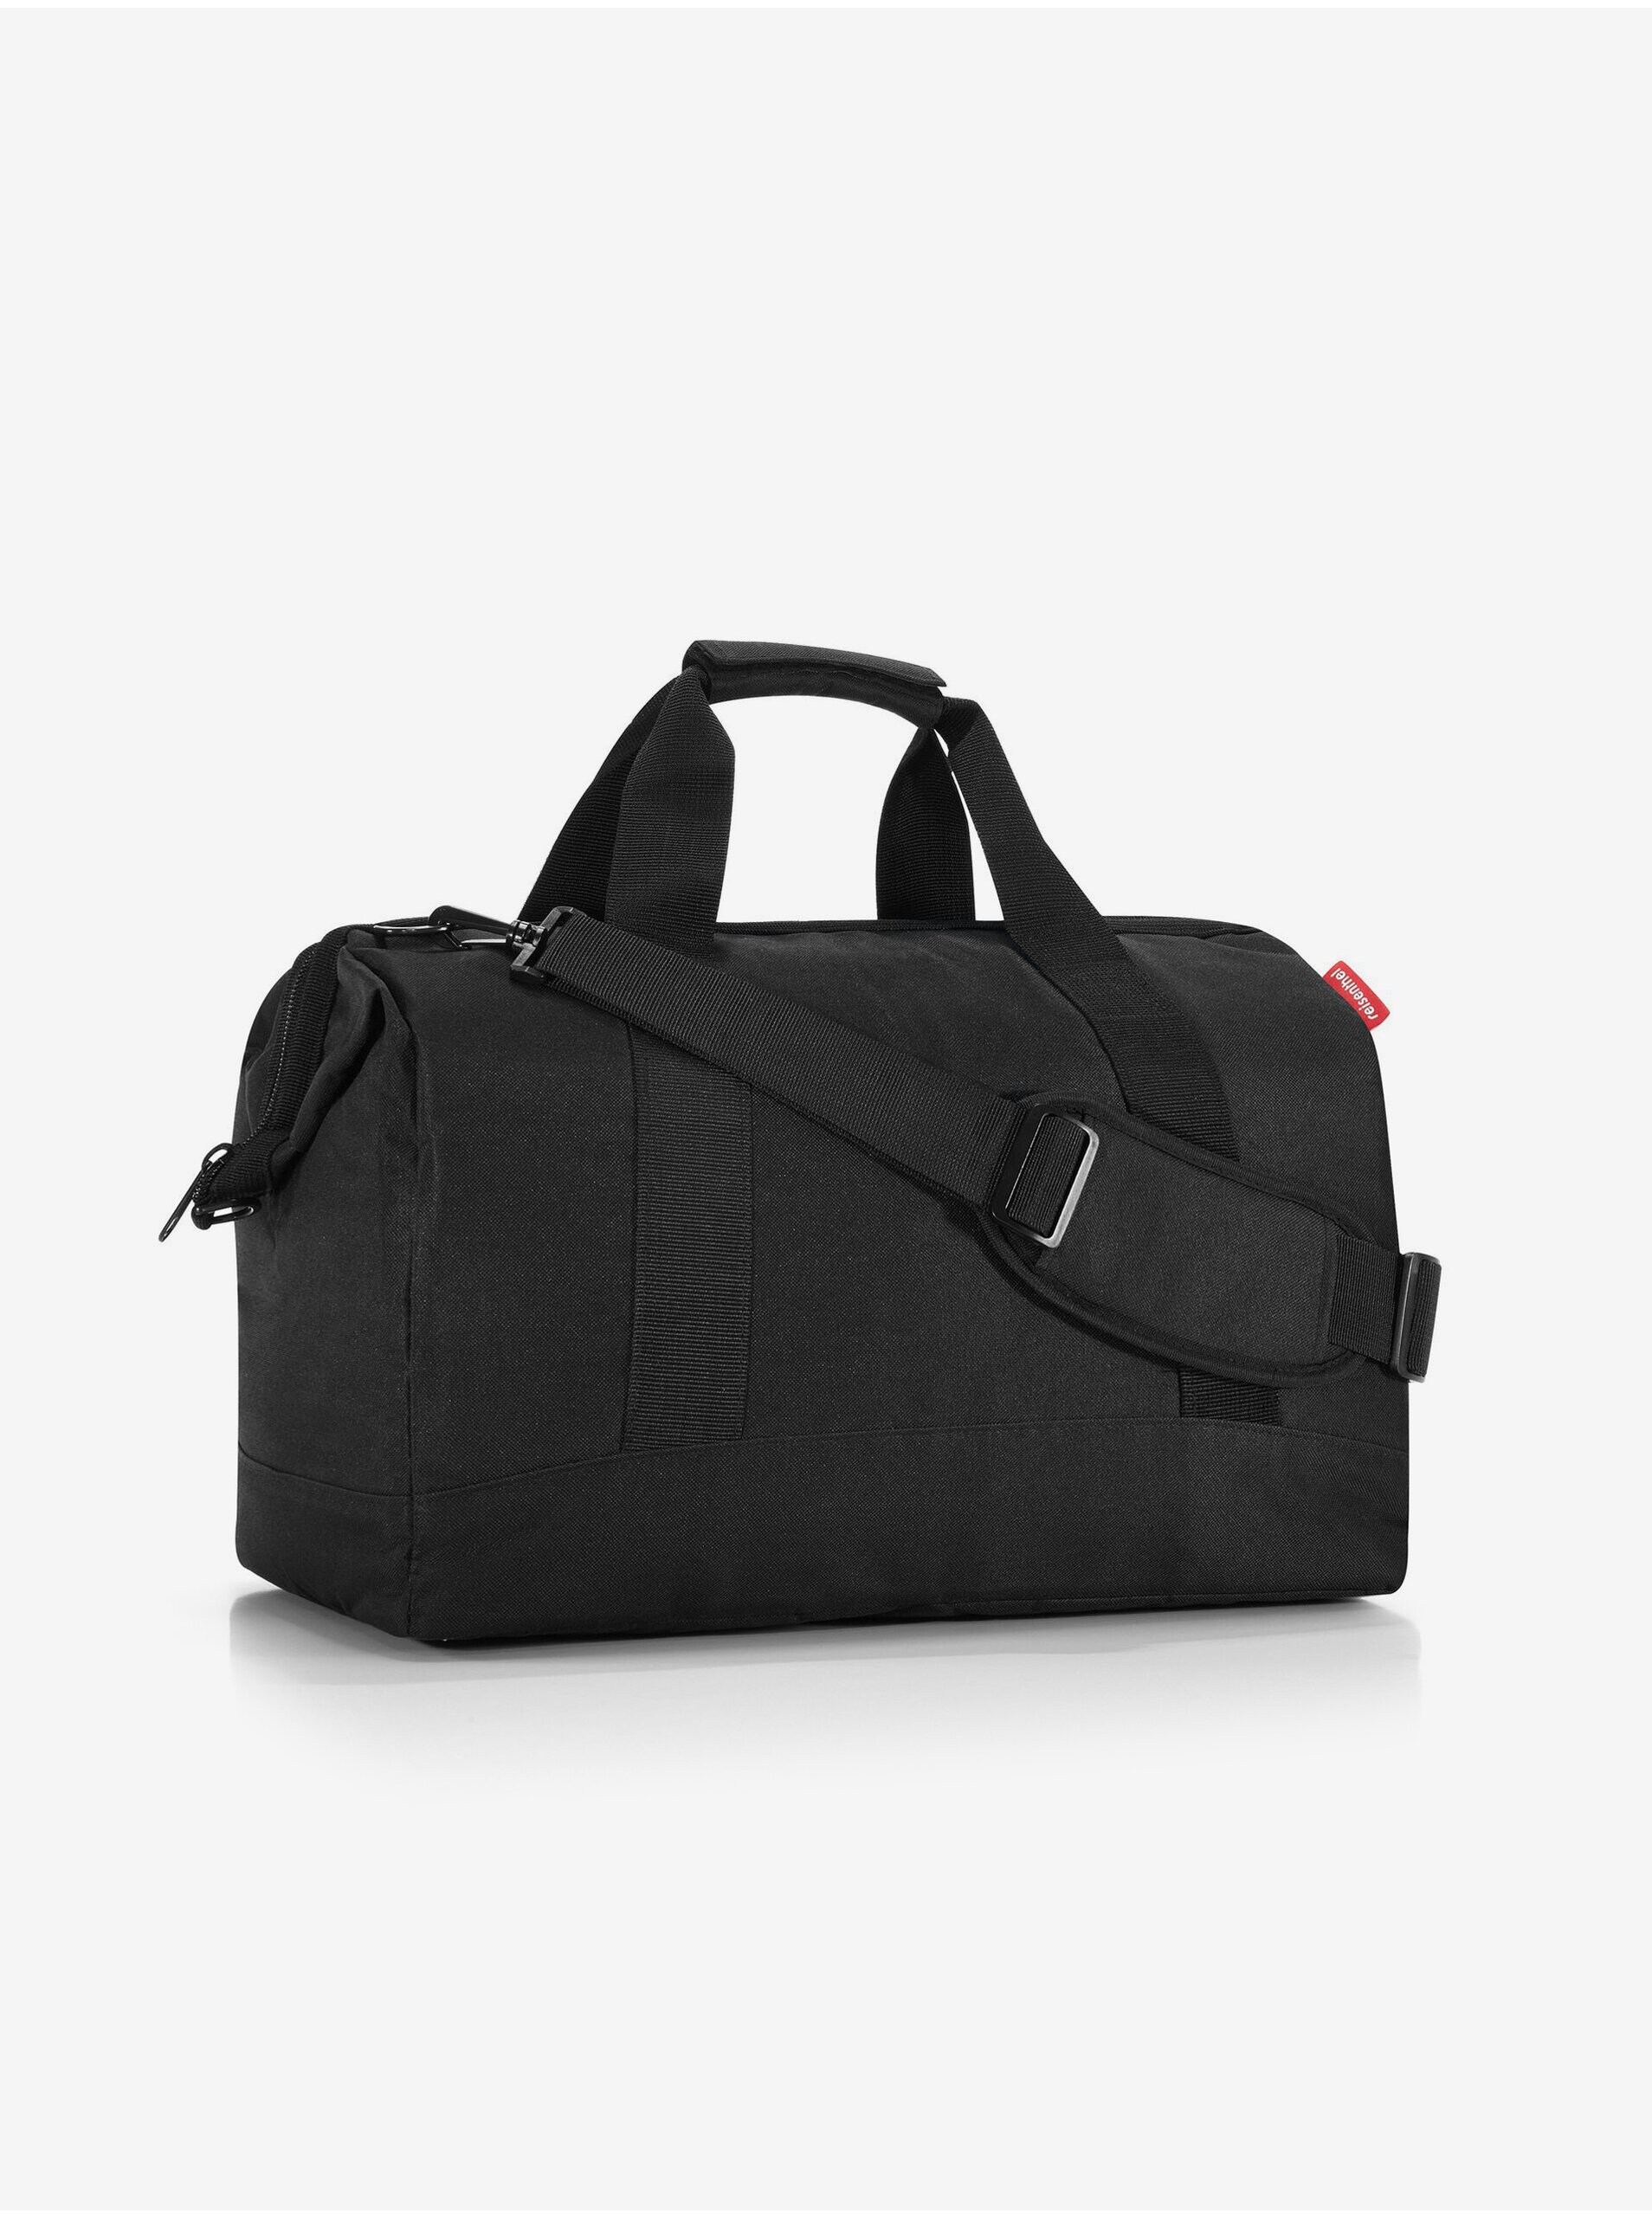 E-shop Černá cestovní taška Reisenthel Allrounder L Black